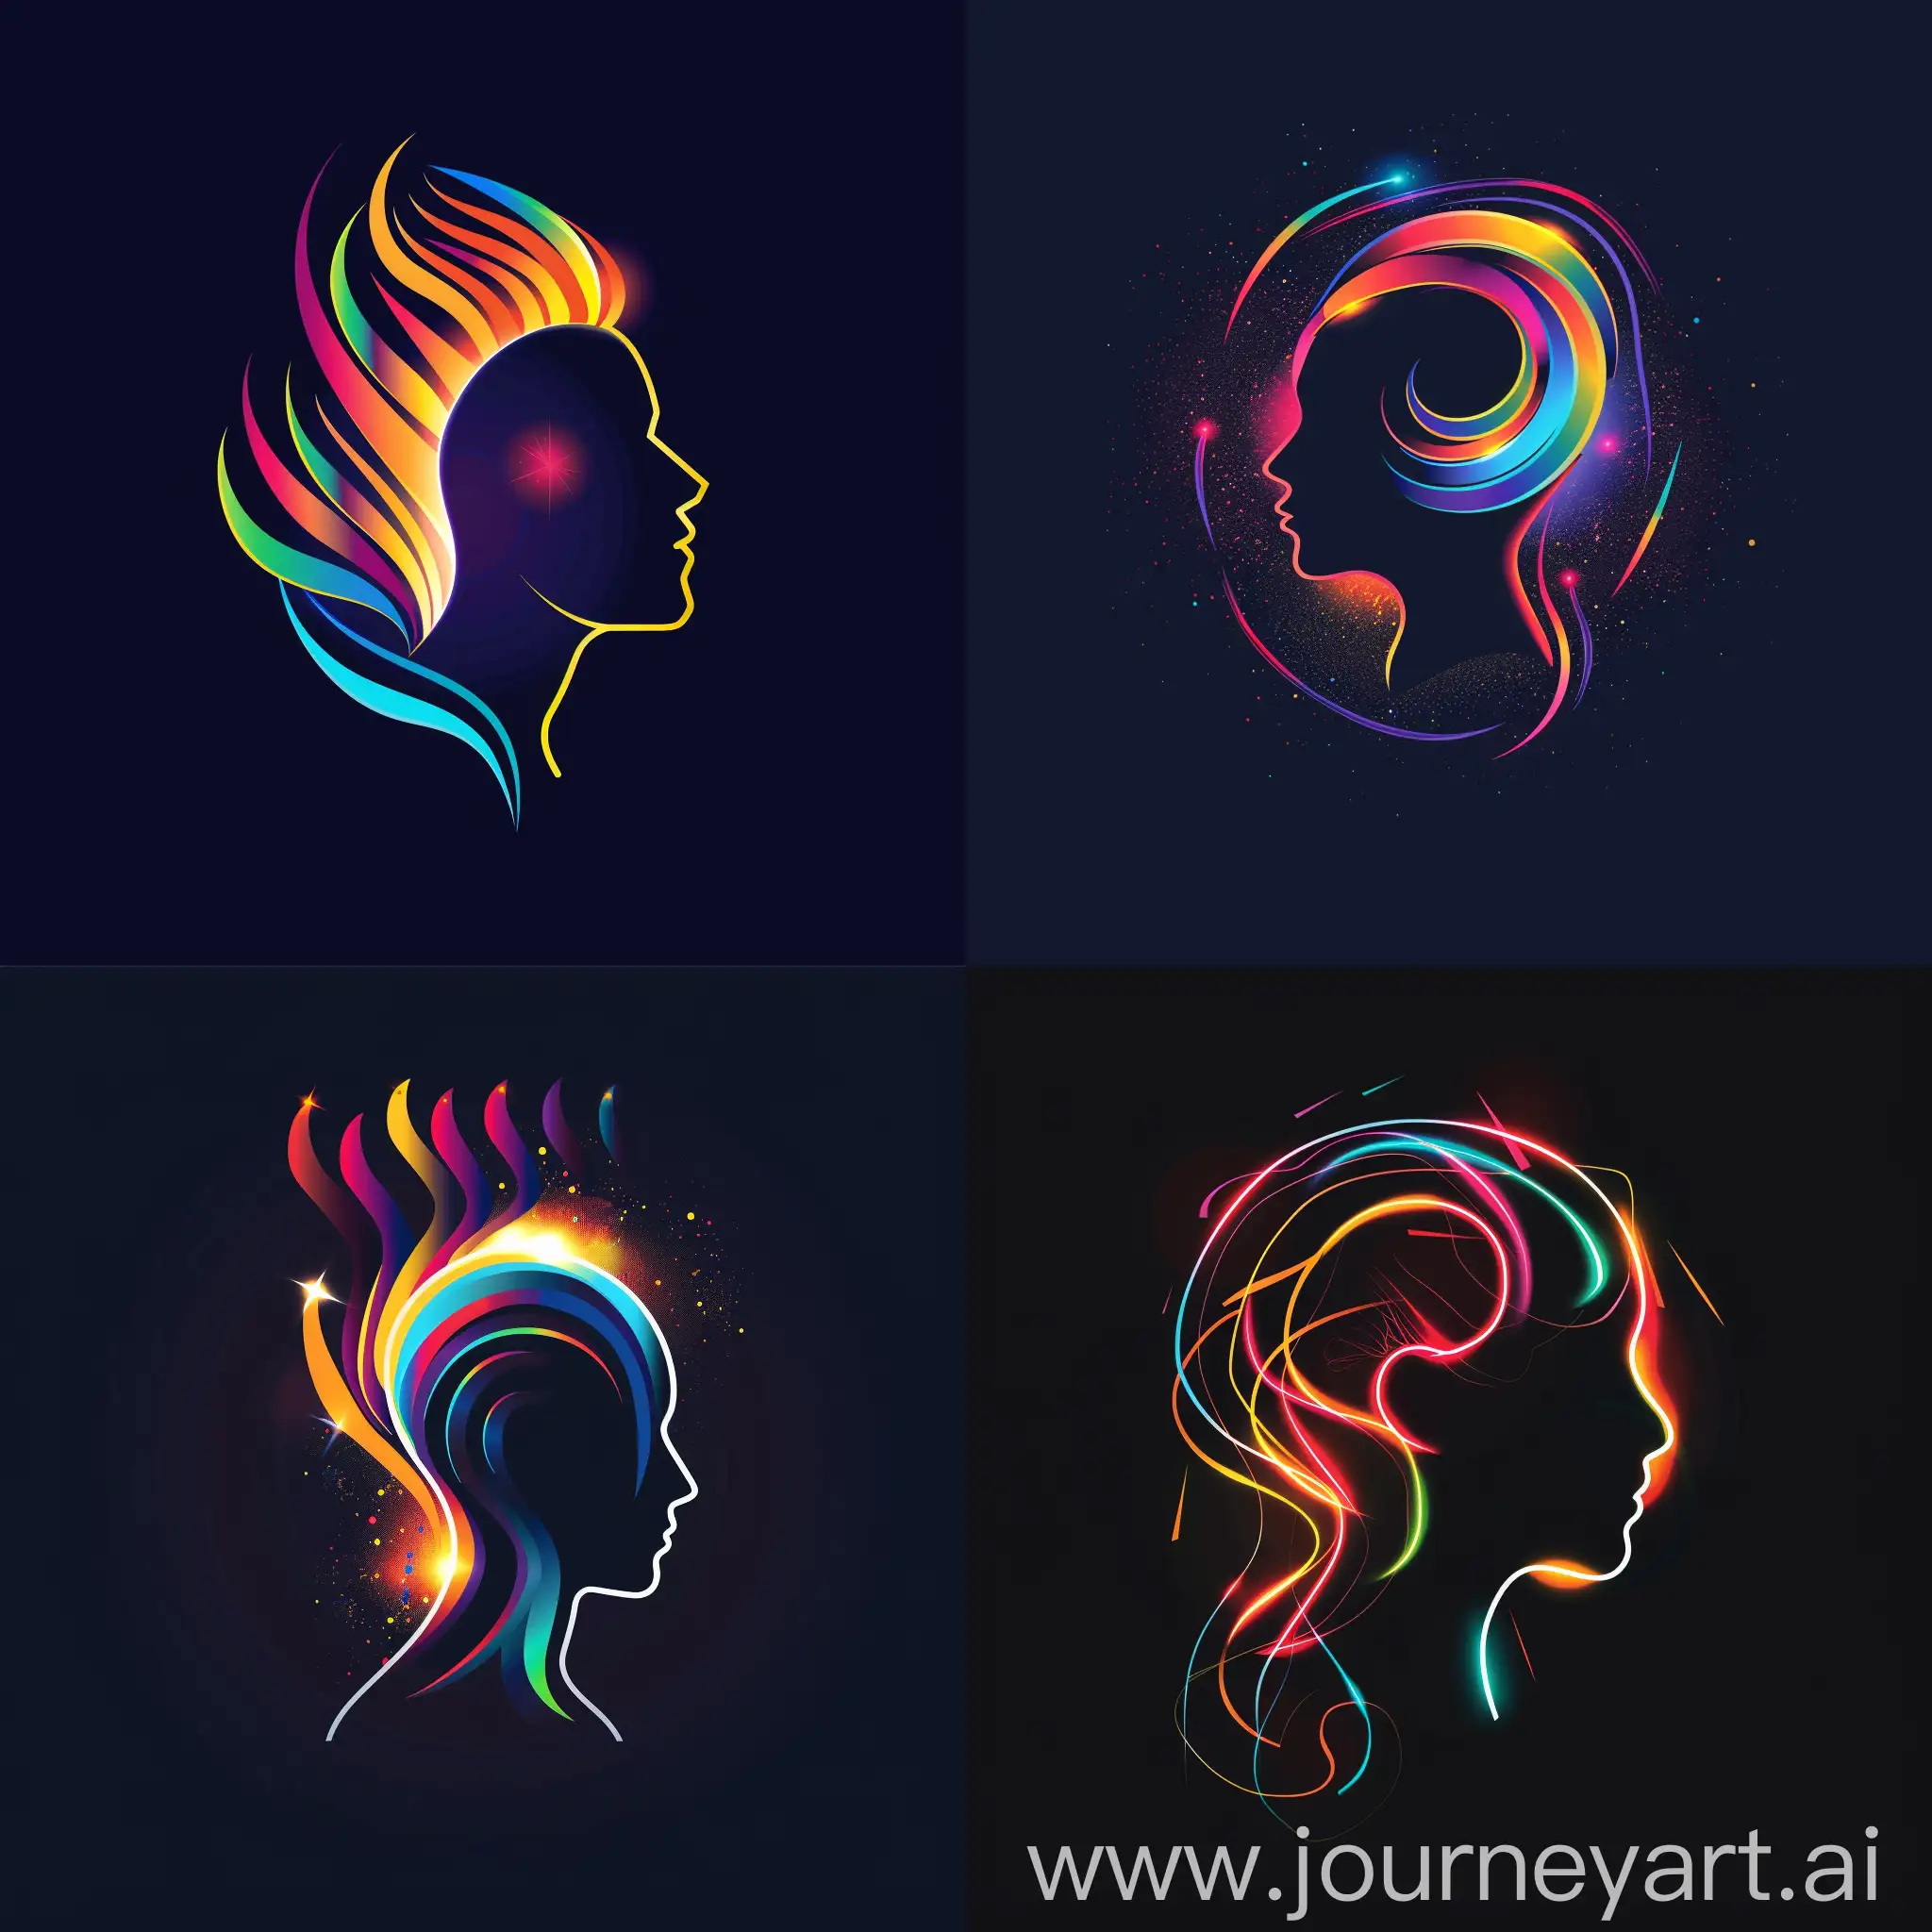 تصویر نماد سر یک انسان با رنگهای متفاوت و دیزاین شده با حاله نور همان رنگ در اطرافش با بک گراند مشکی